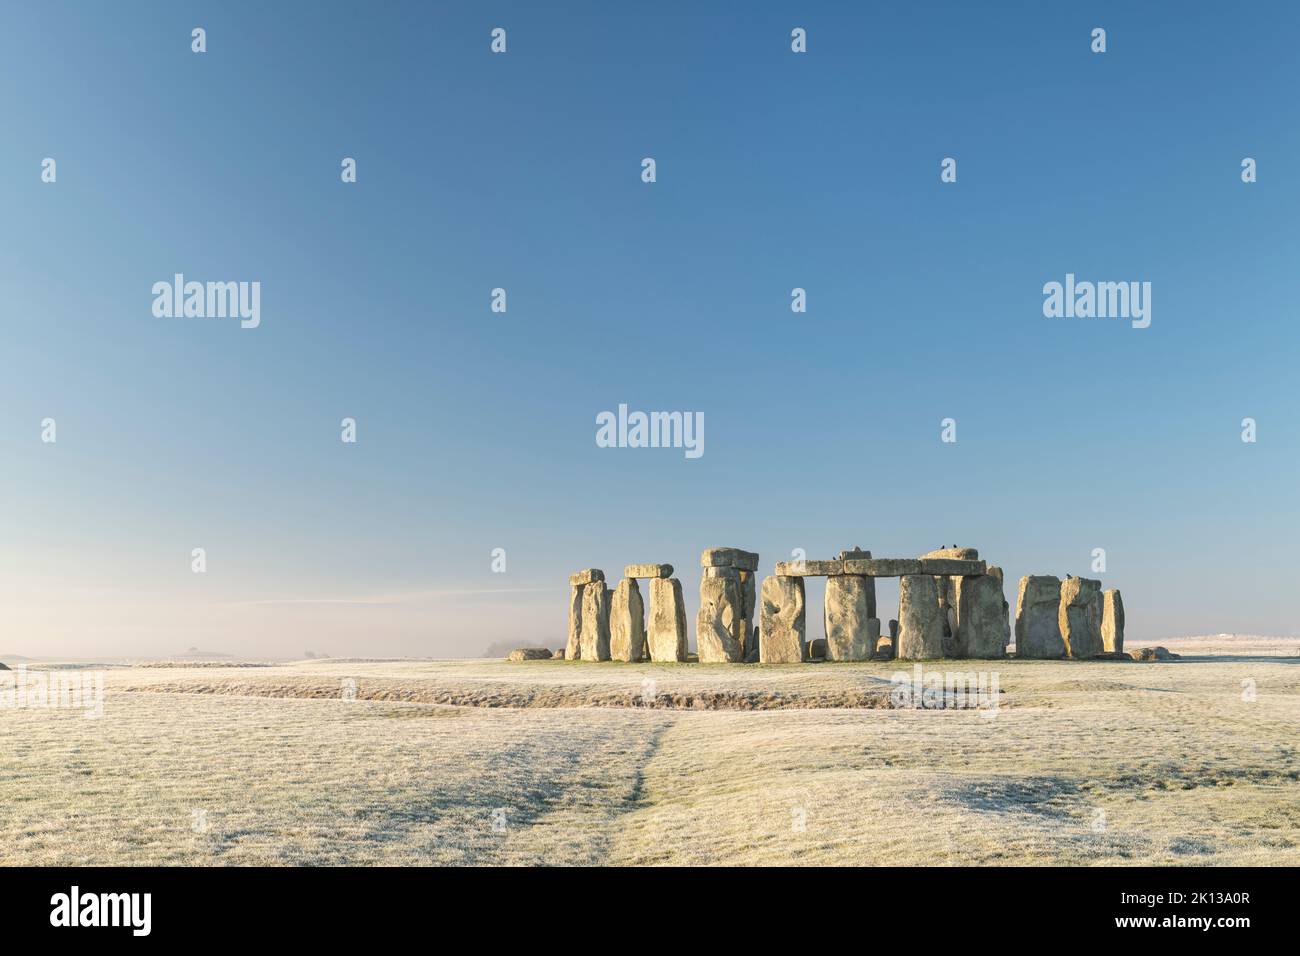 Stonehenge, site classé au patrimoine mondial de l'UNESCO, à l'aube d'une matinée hivernale glaciale, Wiltshire, Angleterre, Royaume-Uni, Europe Banque D'Images